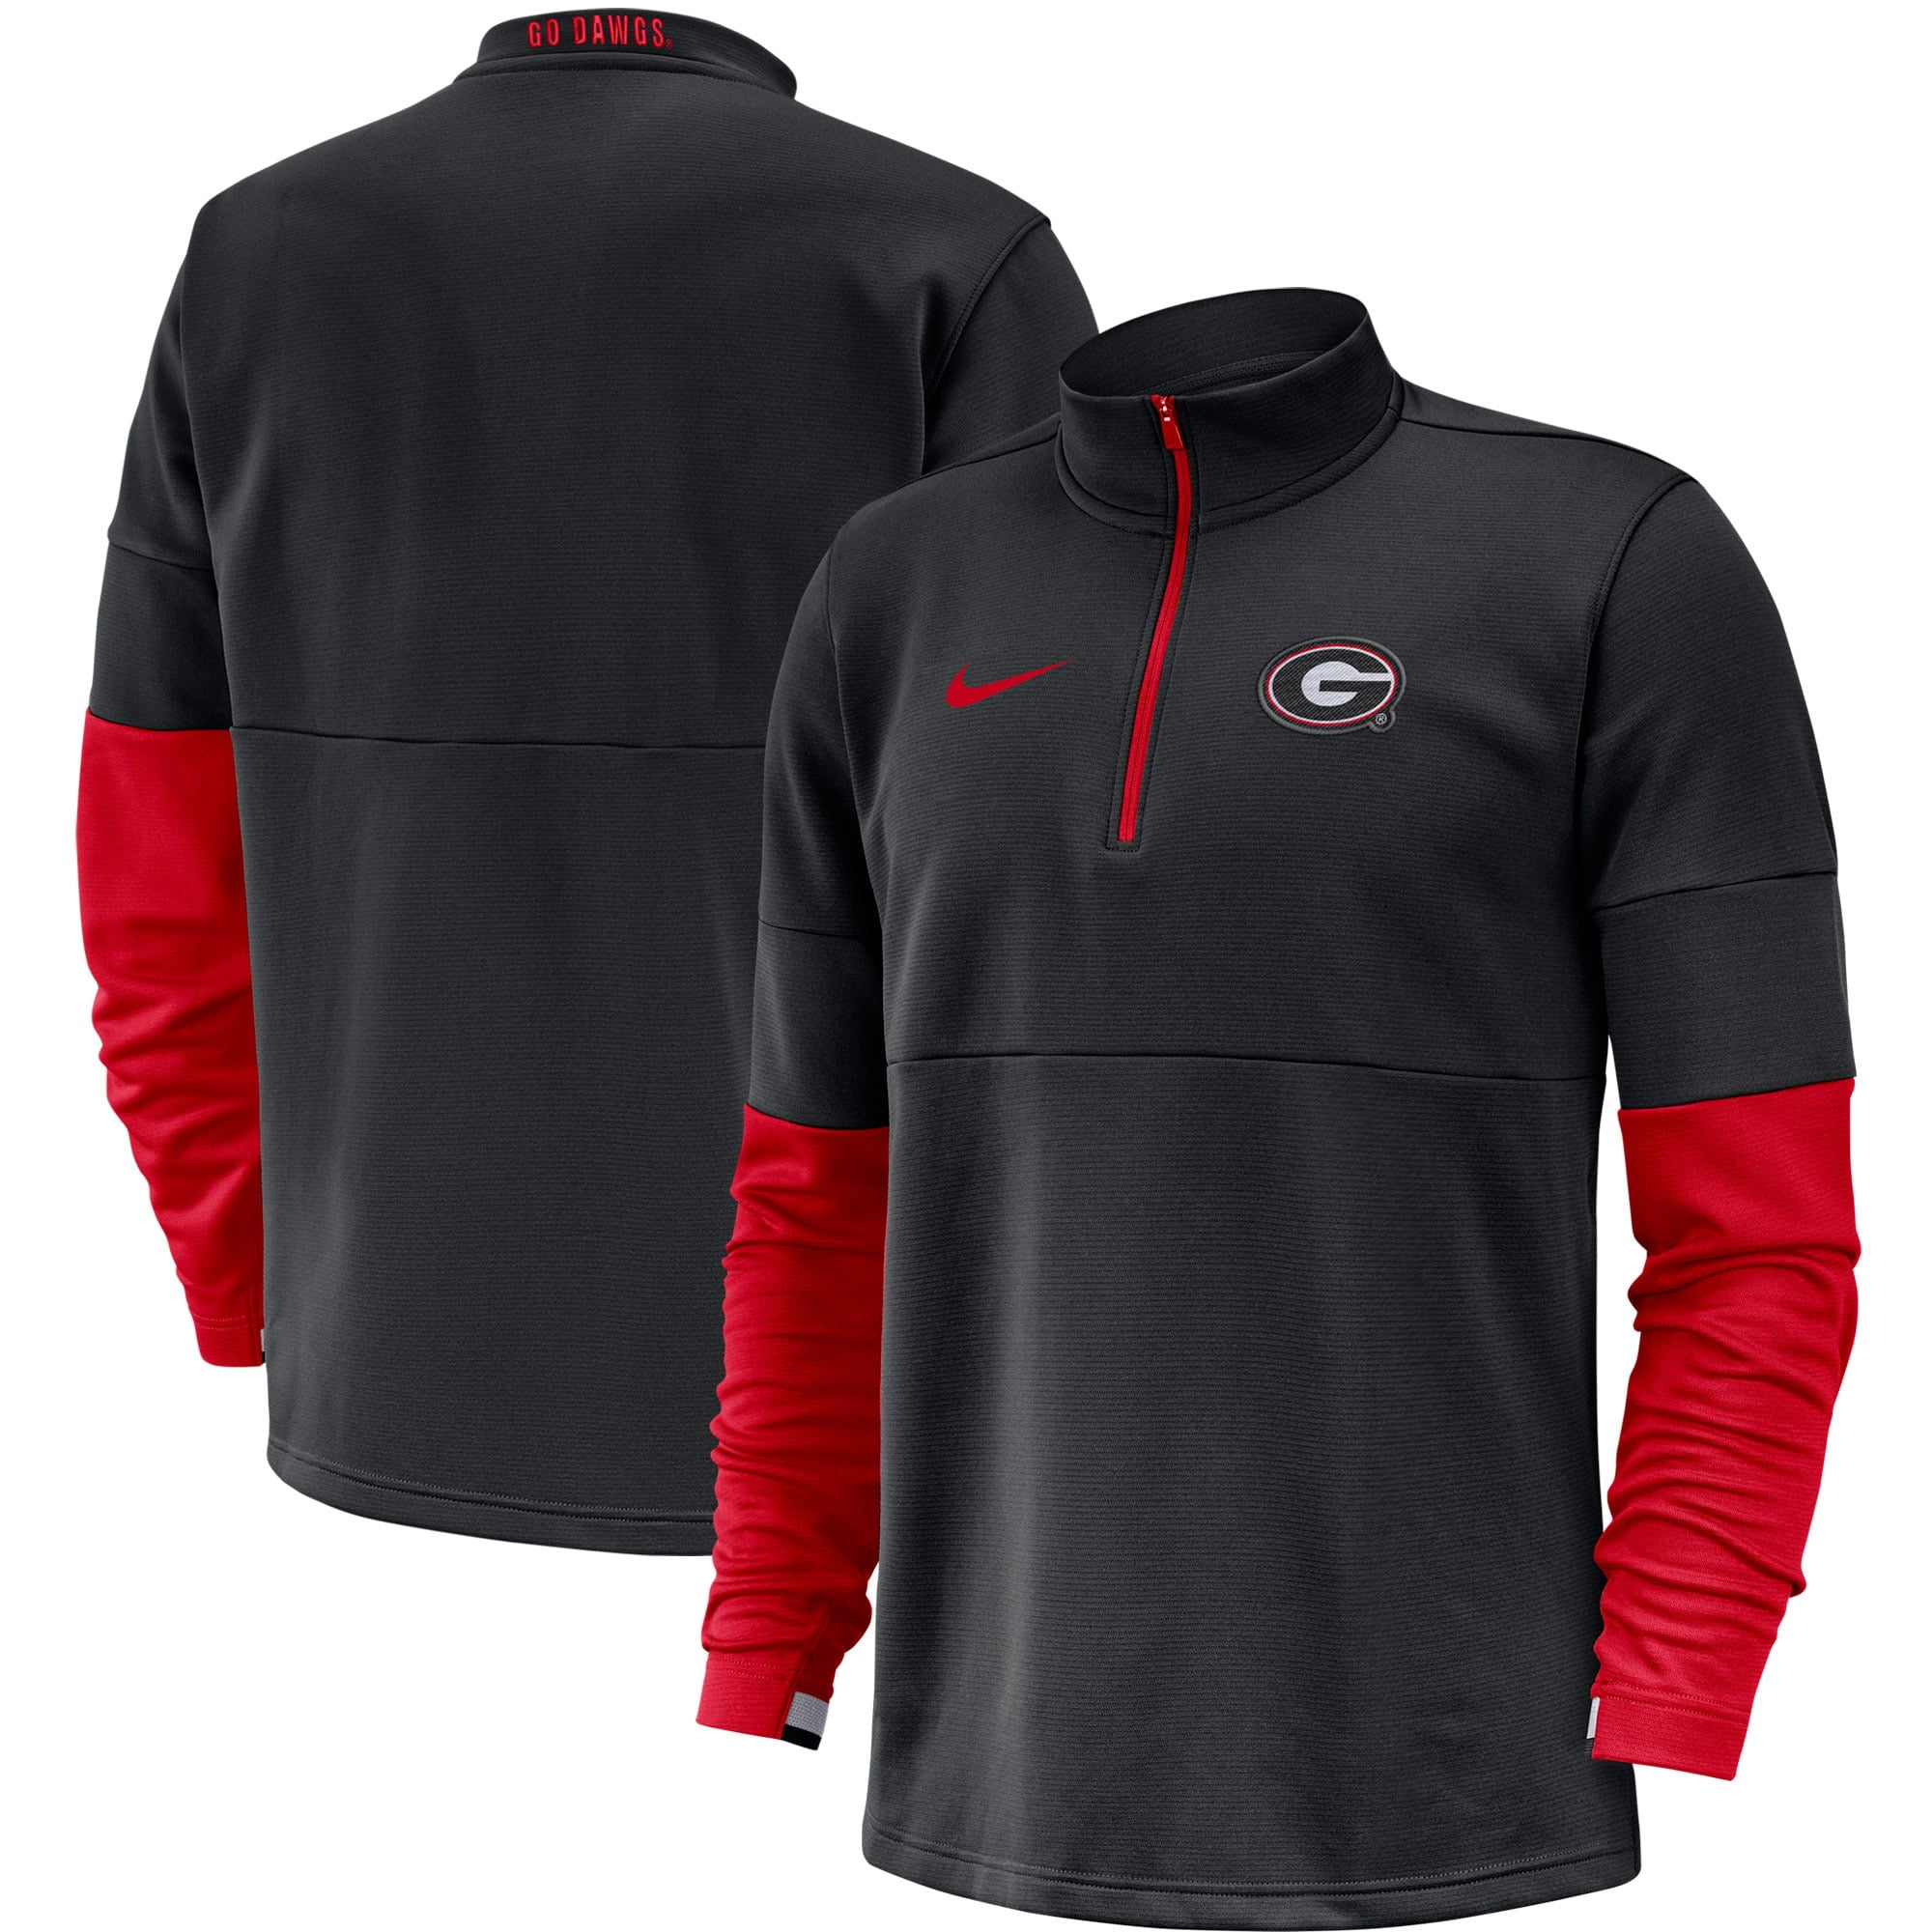 UGA University of Georgia Mens Athletic Pullover Sweatshirt Jacket Hoodie